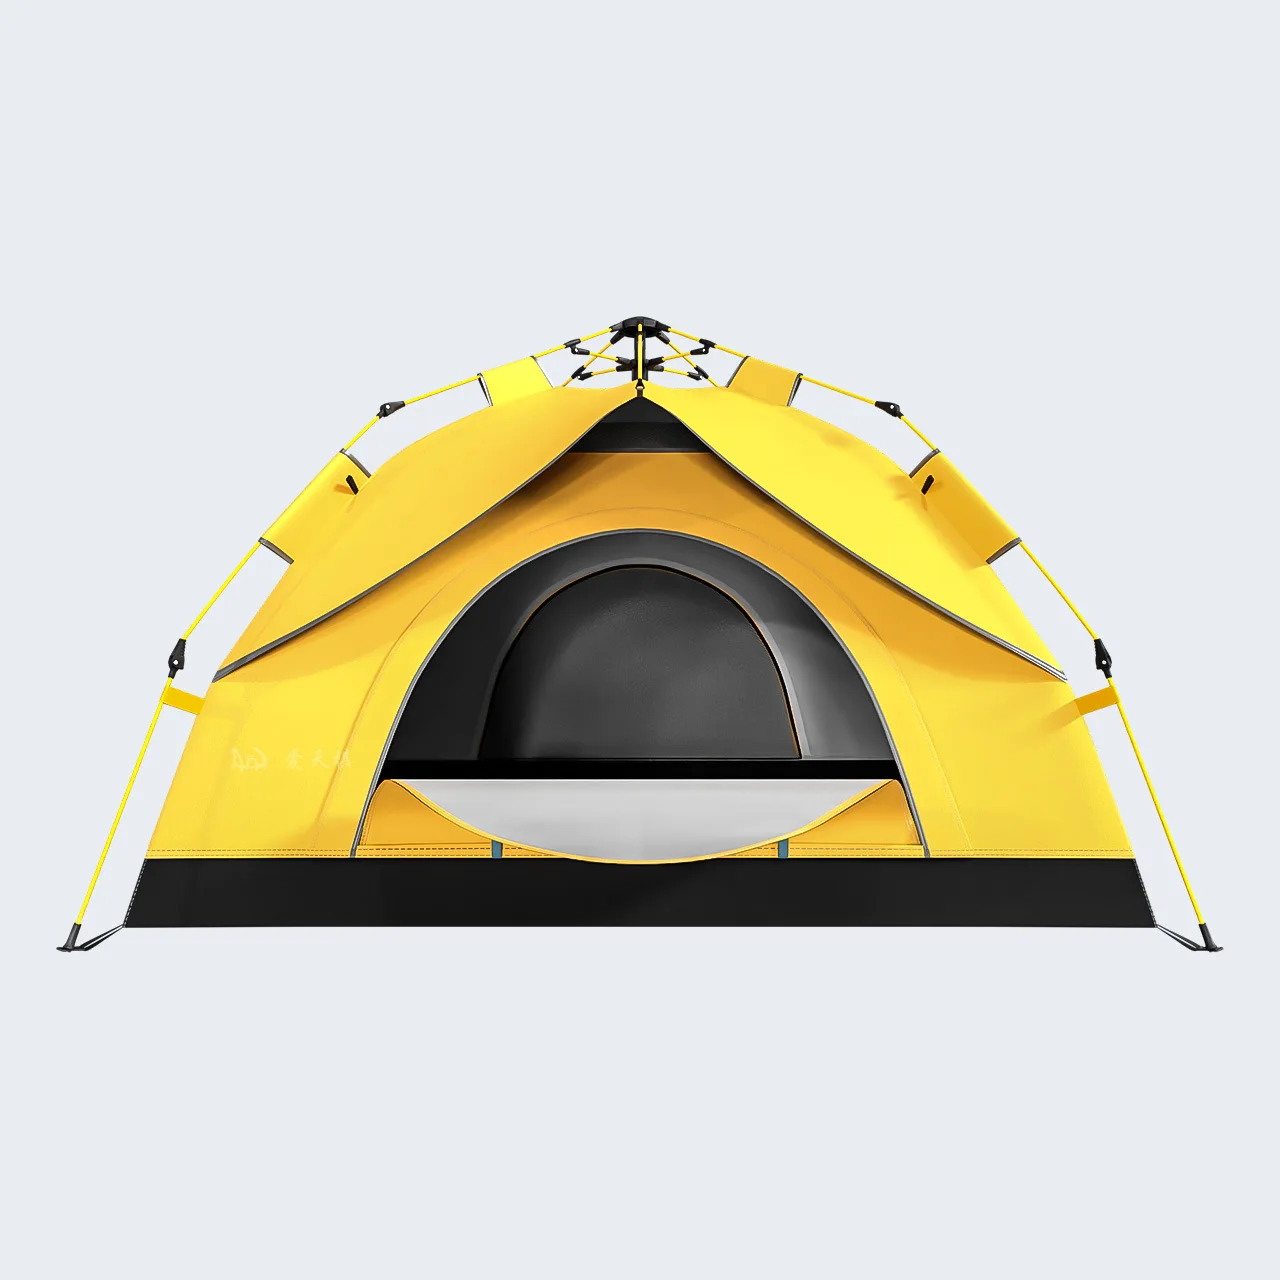 Автоматическая кемпинговая палатка RV, семейная палатка на 3-4 человека, Двухслойная Переносная палатка для пеших прогулок